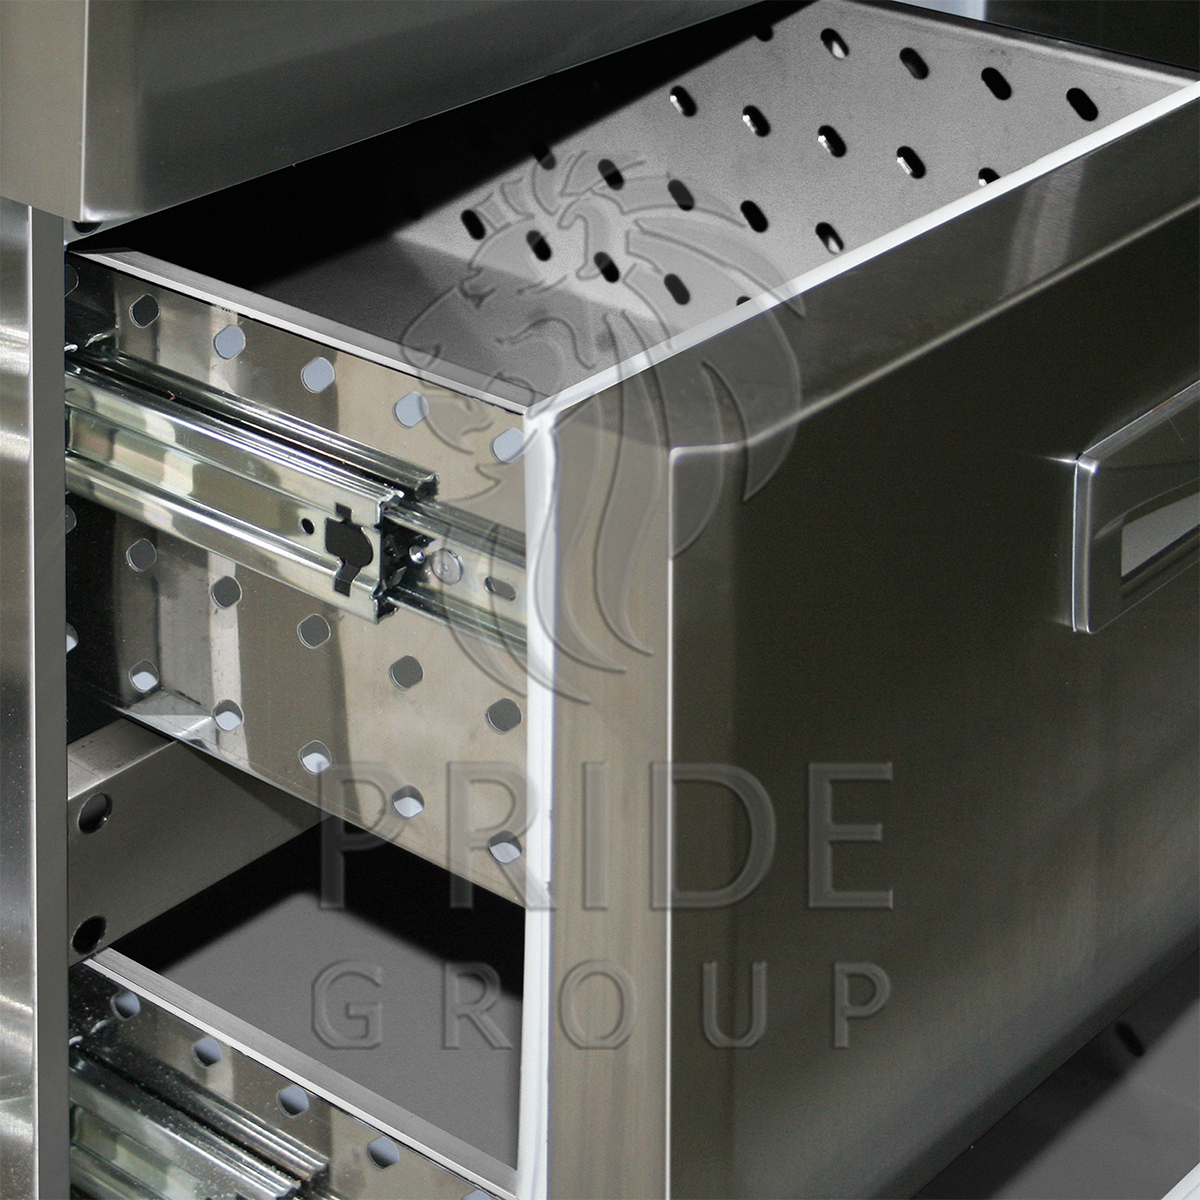 Стол холодильный Finist СХС-700-2/3 1810х700х850 мм